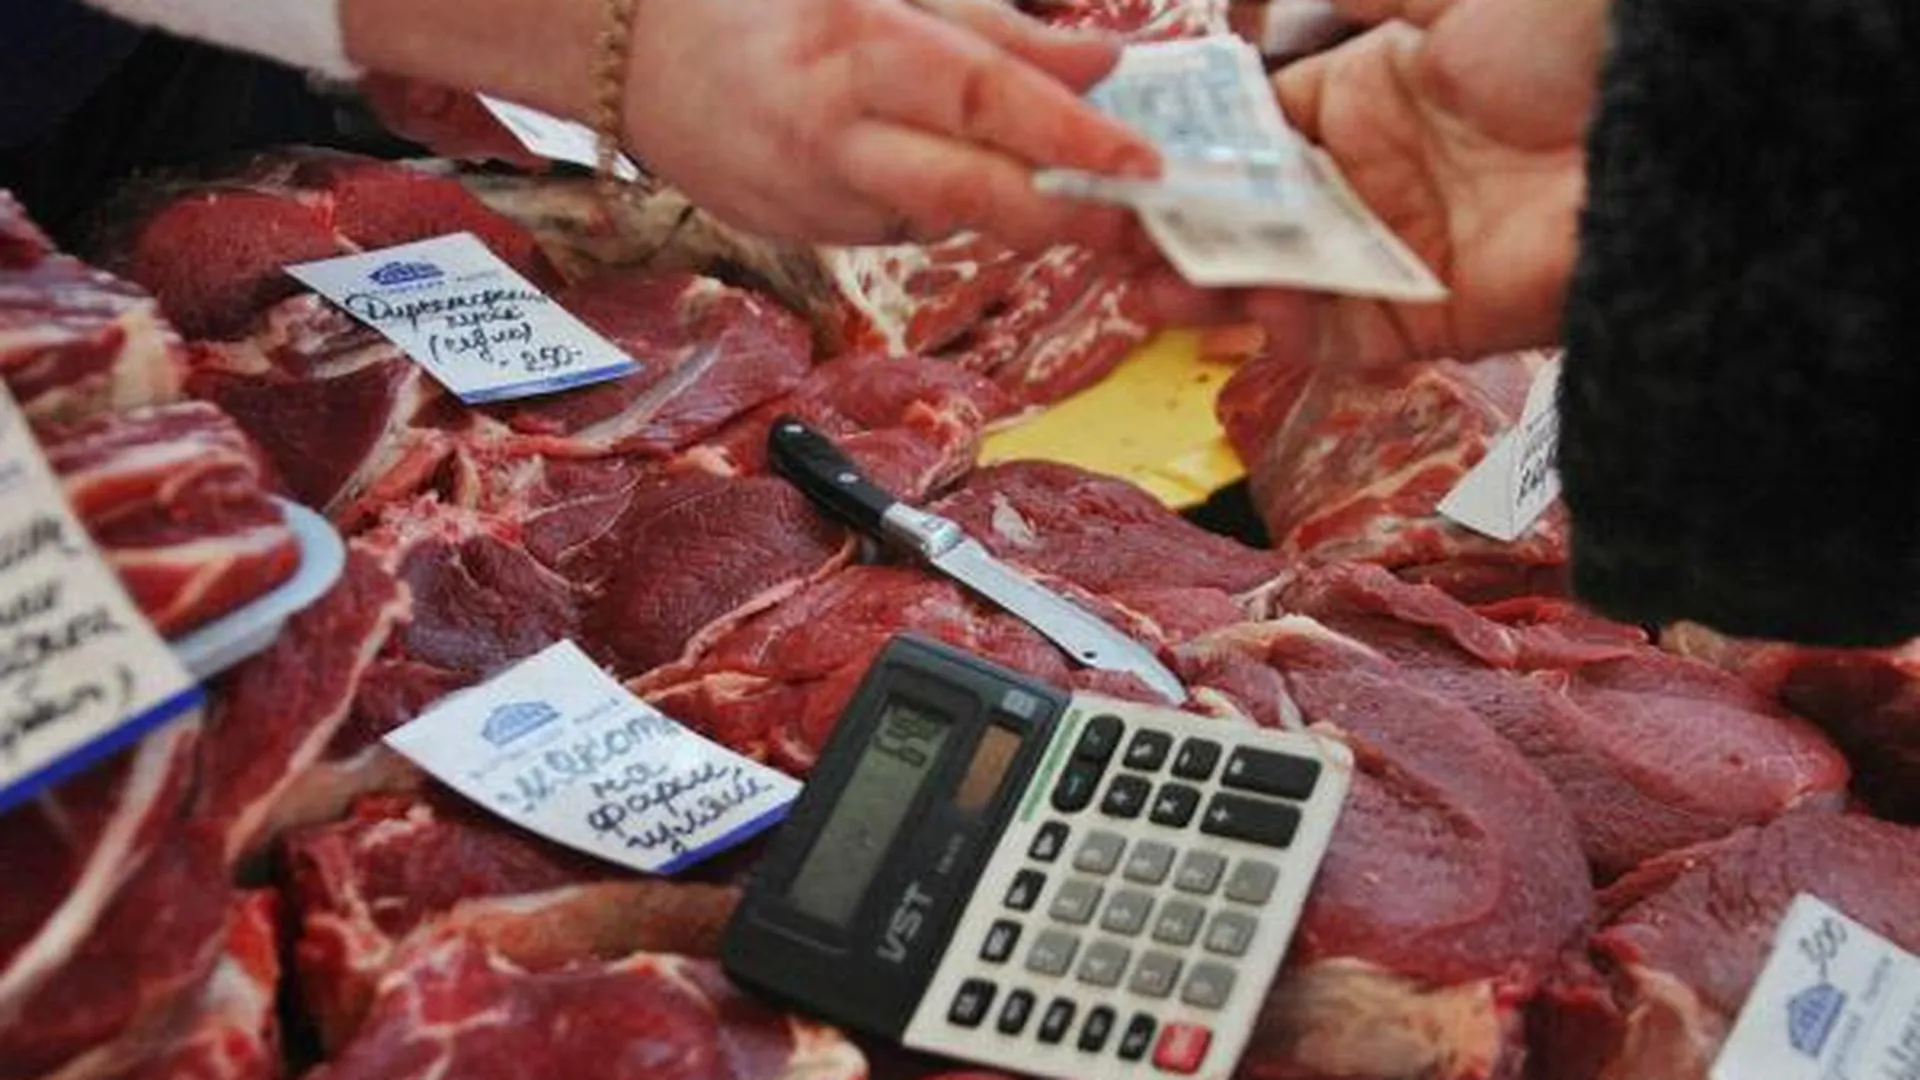 Кишечную палочку в говядине выявили в ходе внеплановой проверки магазина «Бахетле» в МО